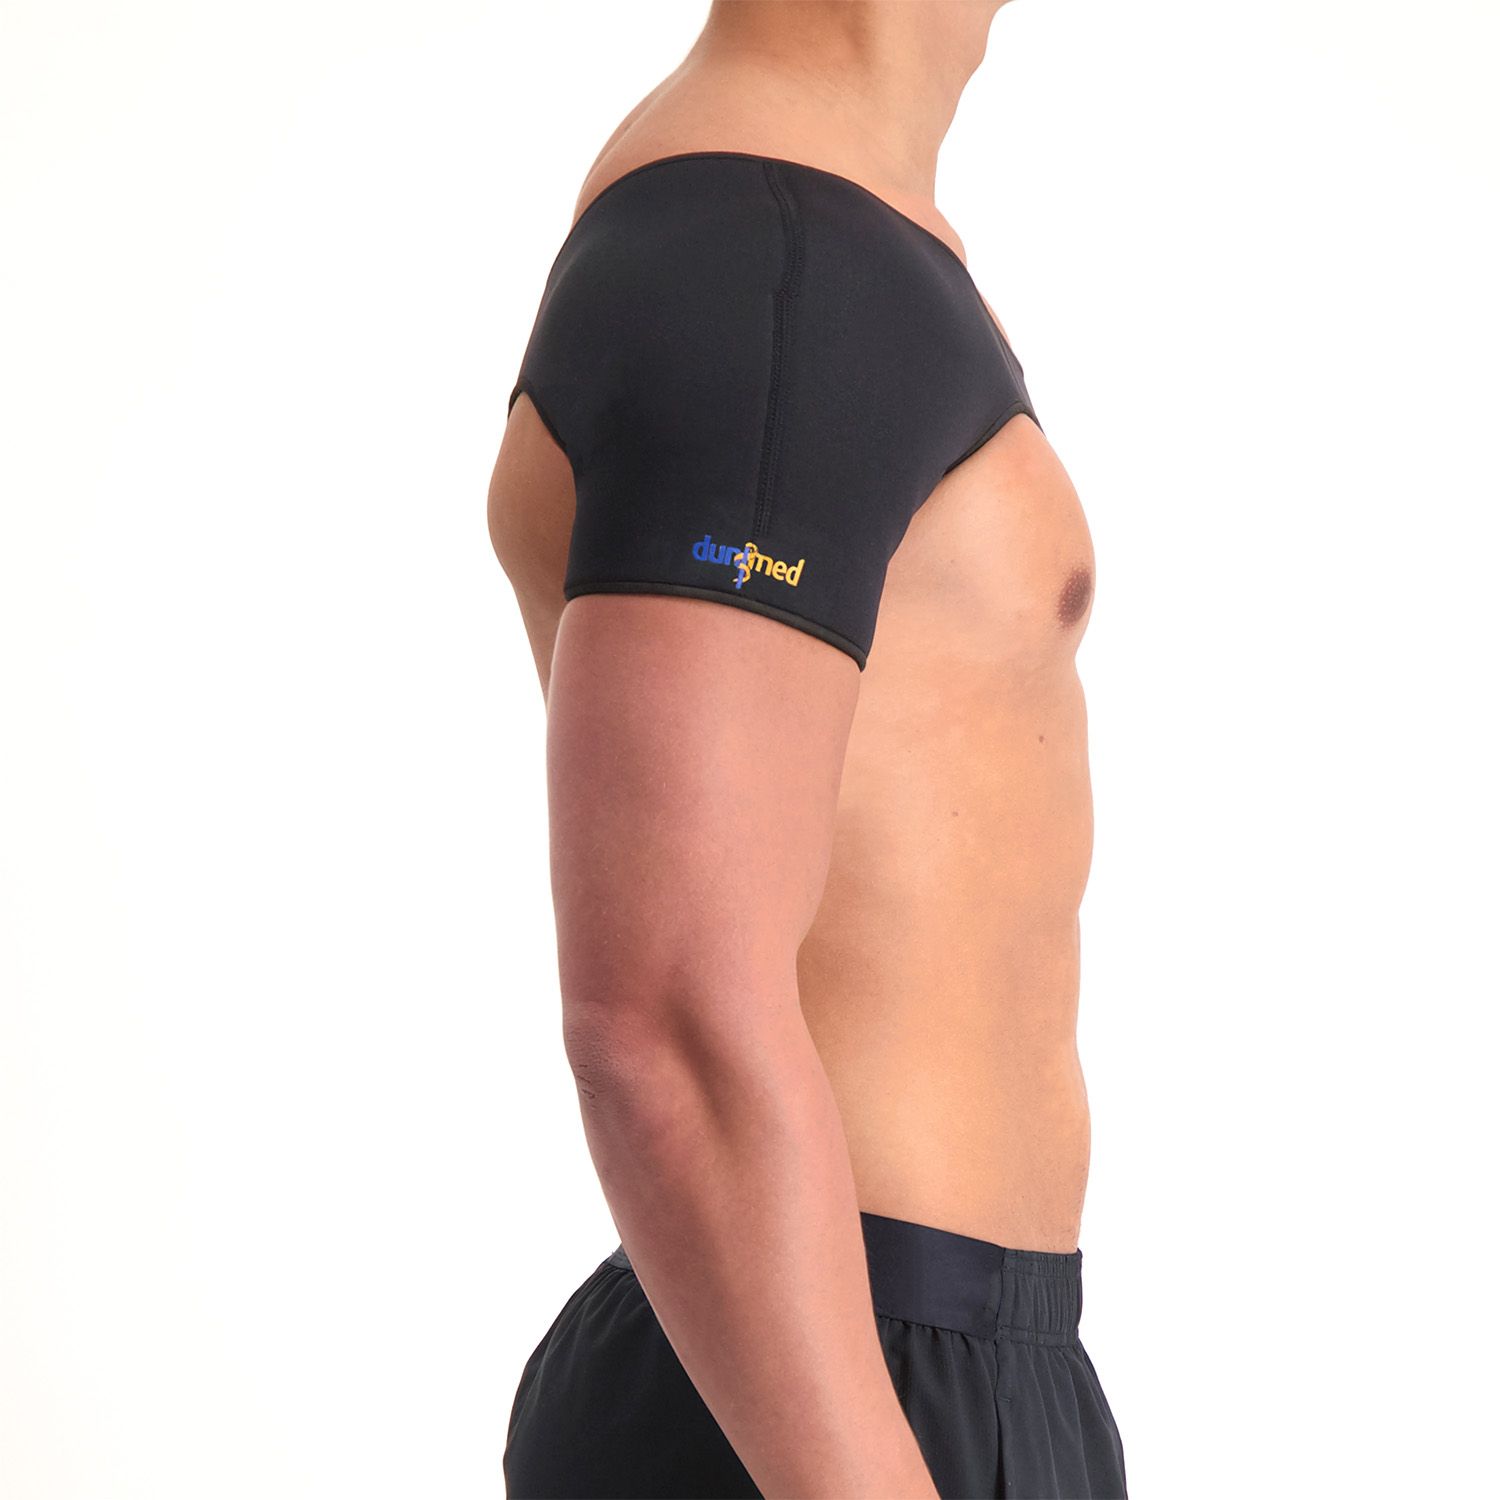 medidu shoulder support front view